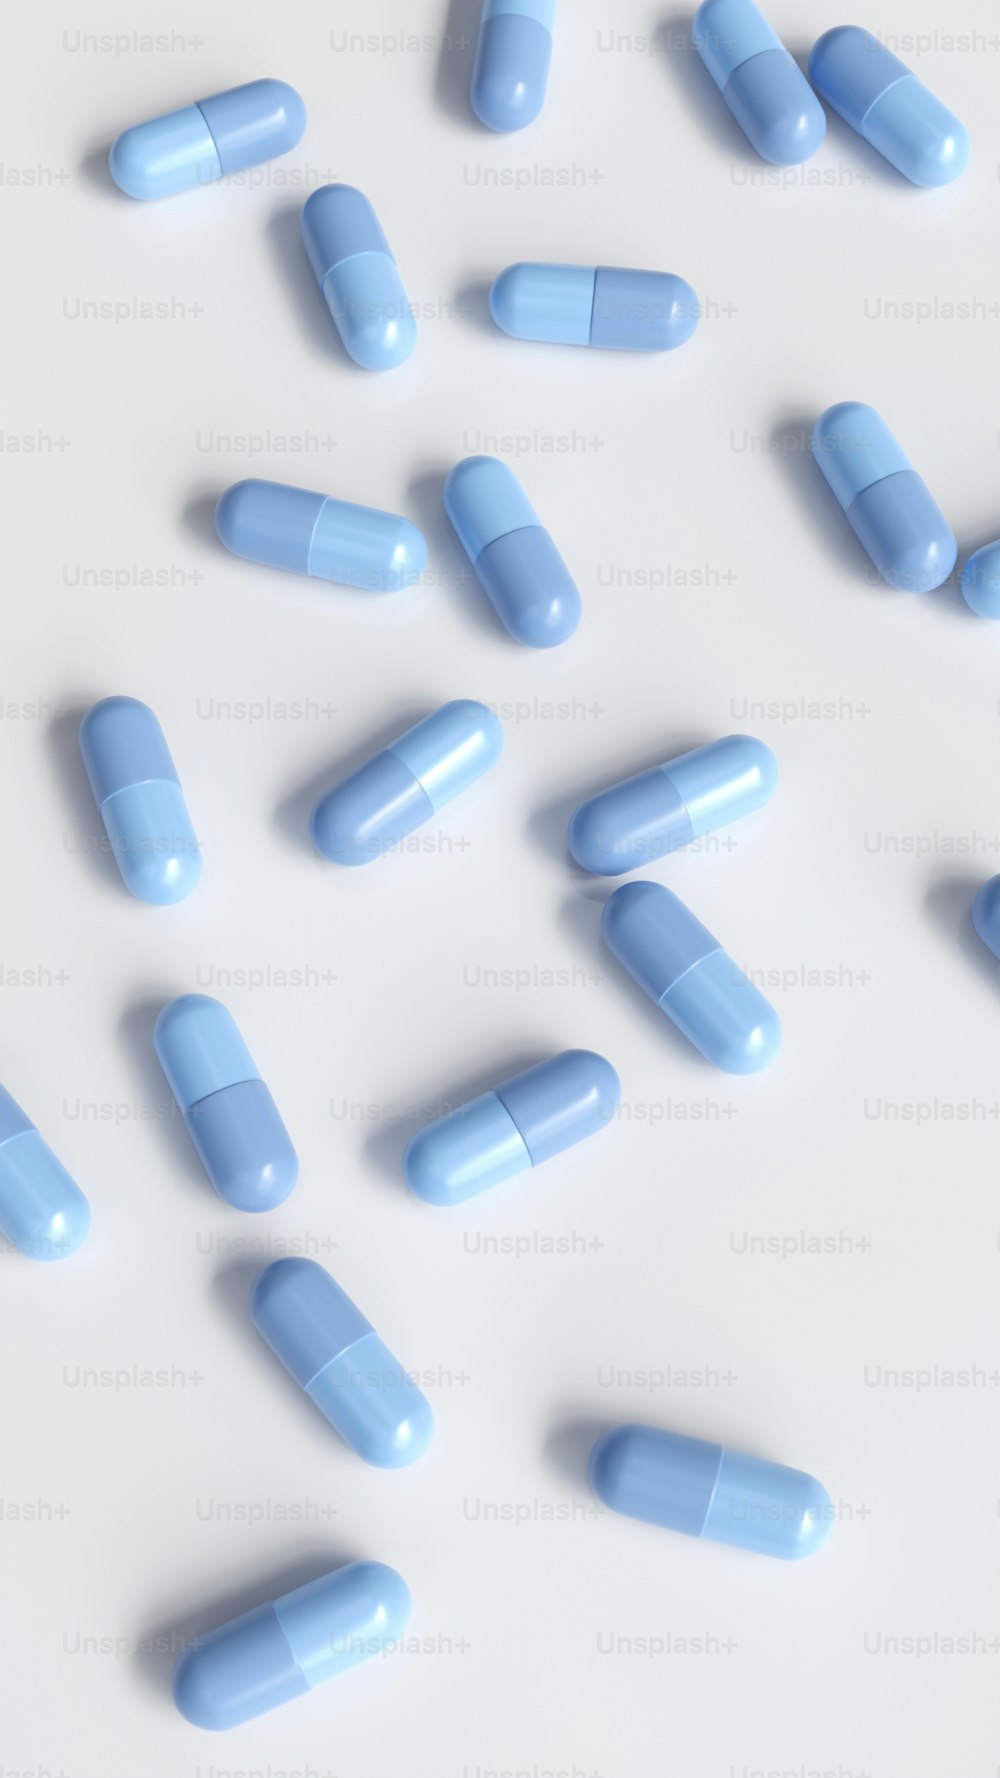 Le pillole blu sono sparse su una superficie bianca